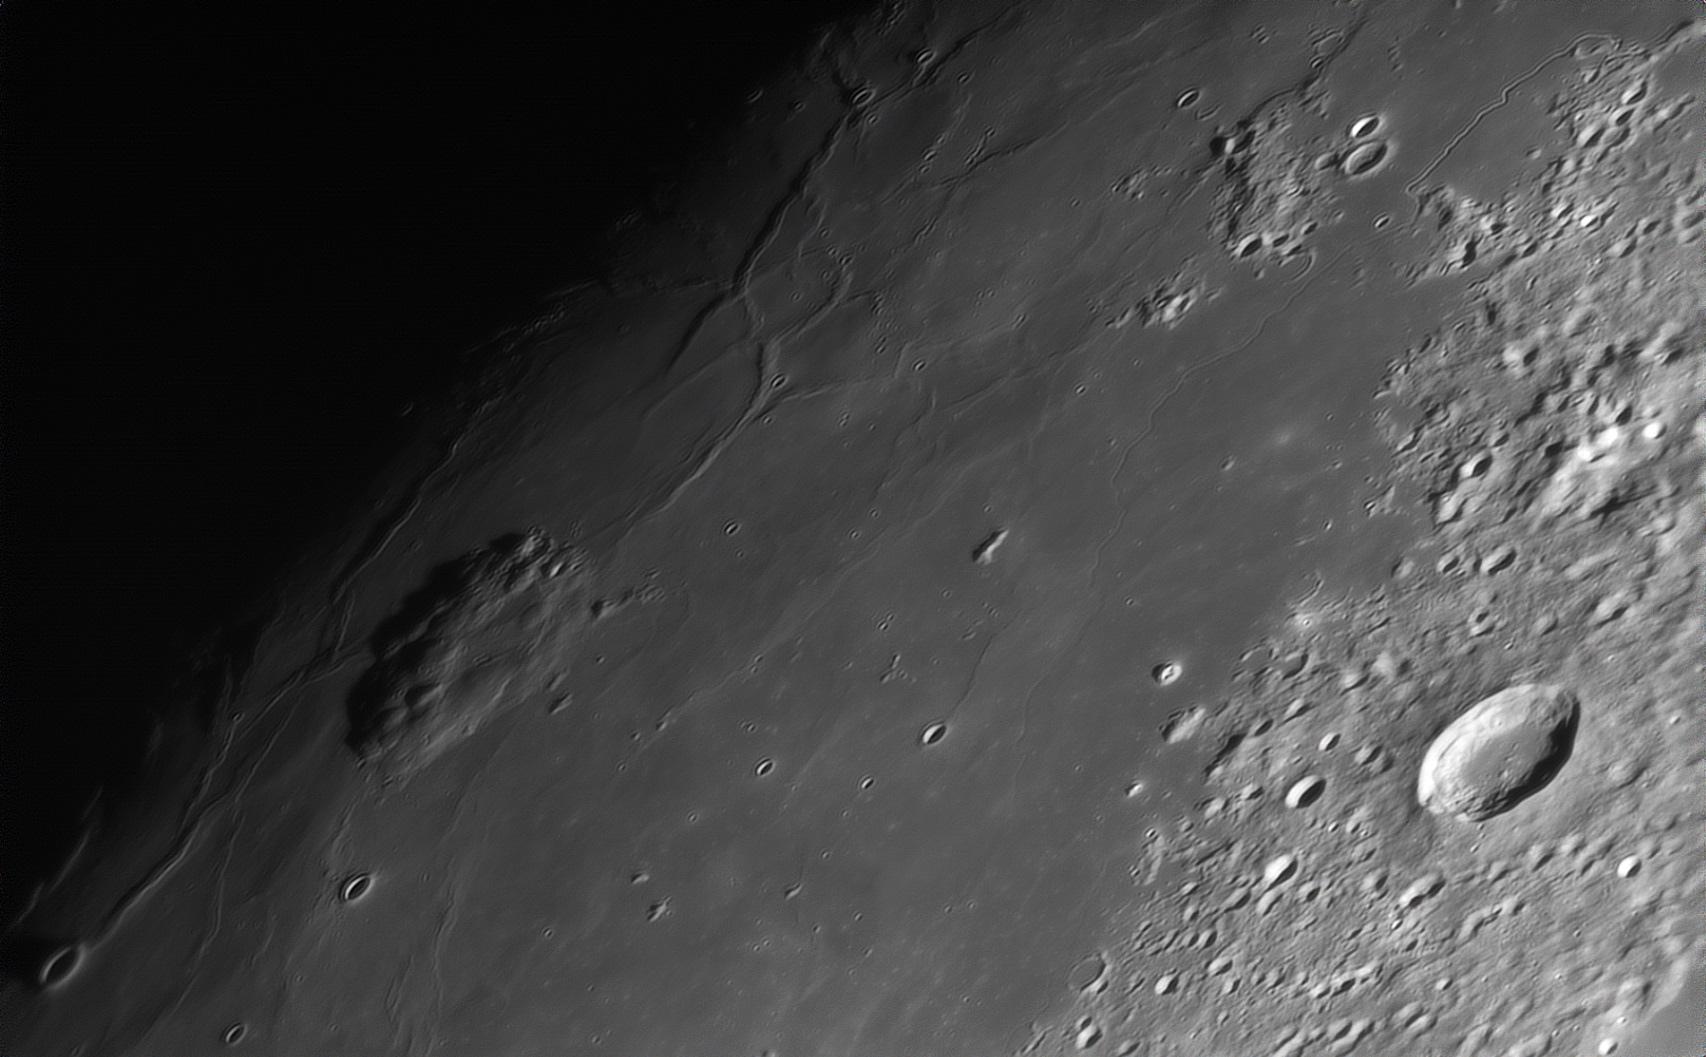 جبل رومكر، مجمّع قباب بركانية بعرض 70 كيلومتر، يرتفع حوالي 1100 متر فوق البحر القمري الأملس الشاسع المعروف بإسم "محيط العواصف". يمر فاصل القمر -خطّ الظل الفاصل بين الليل والنهار- بشكل قطري عبر الجانب الأيسر في هذه الصورة المقربة المأخوذة عبر التلسكوب لقمر أحدب متزايد.